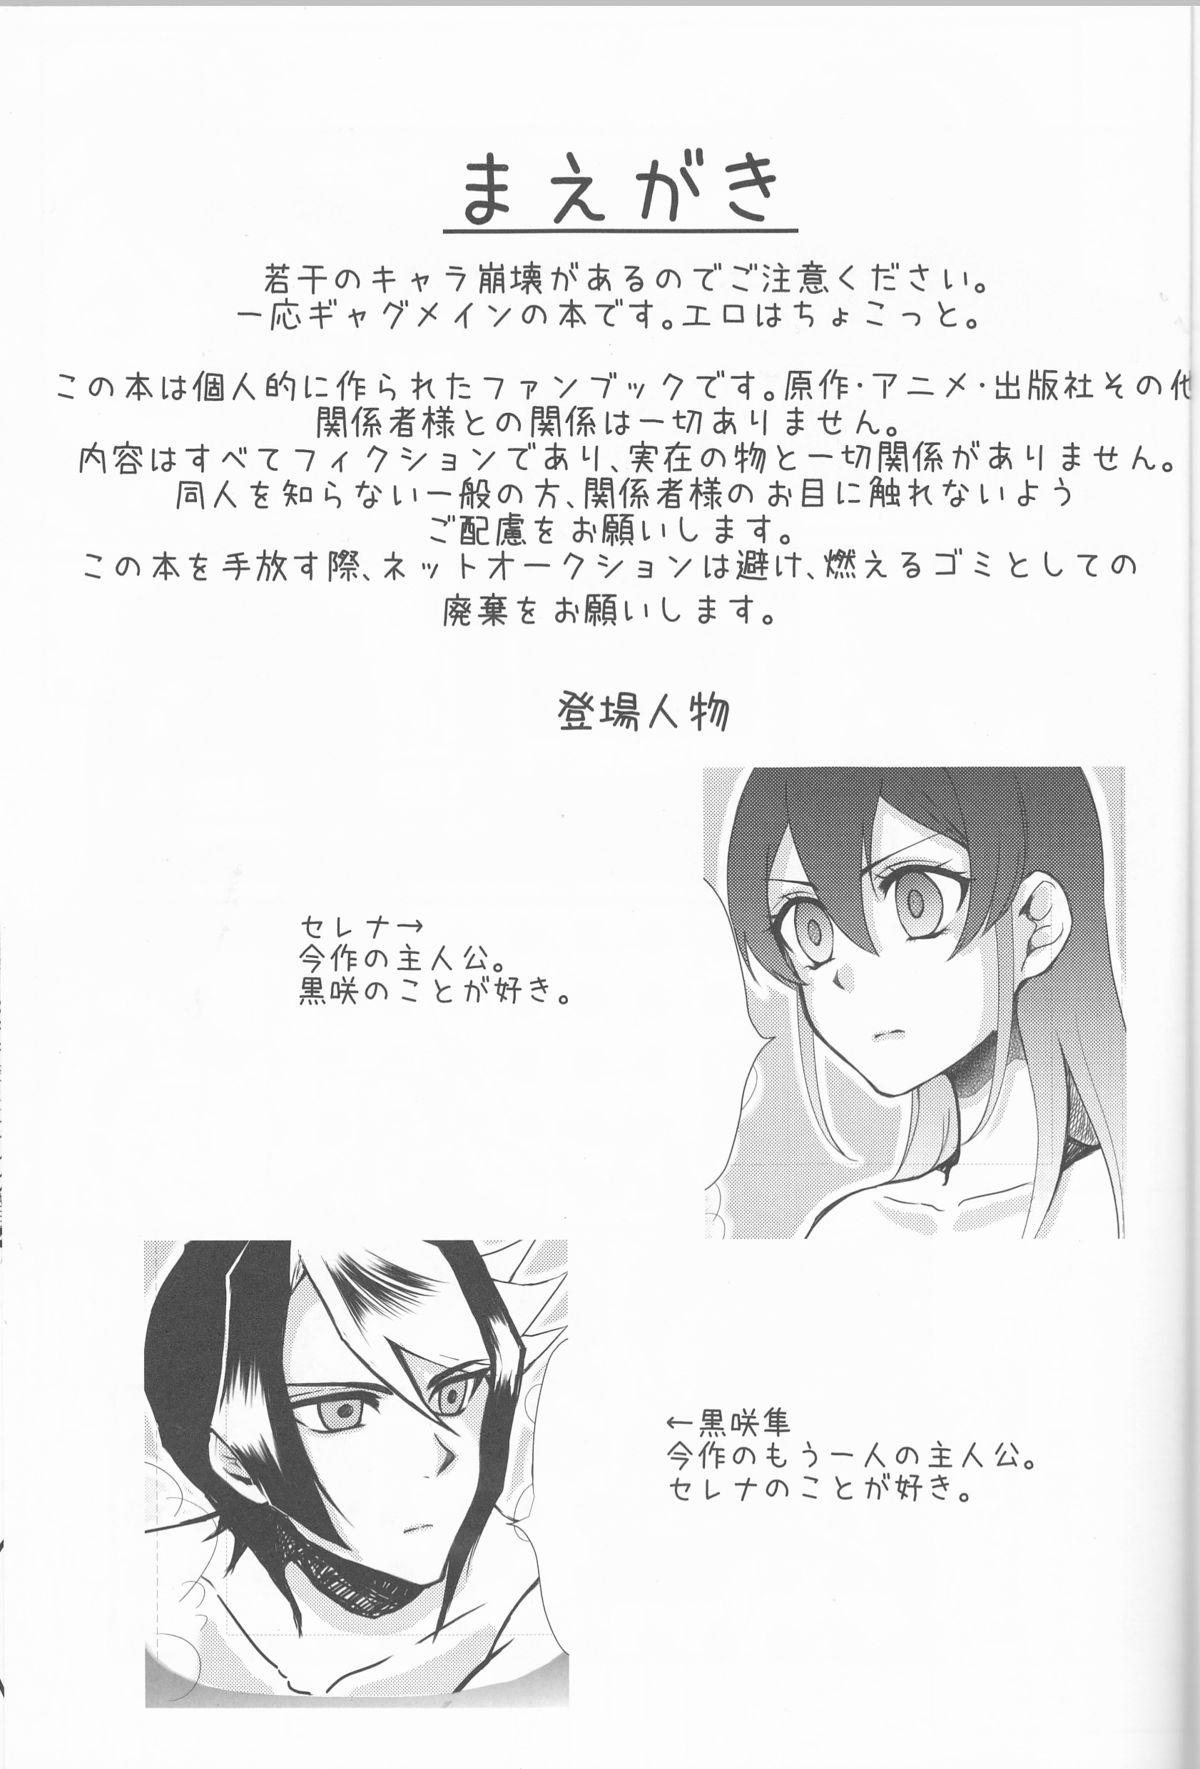 Tittyfuck Hoshoku Kankei ni Aru Serena to Shun ga Renai Kanjou o Idaku to Kou Naru. - Yu-gi-oh arc-v Periscope - Page 2